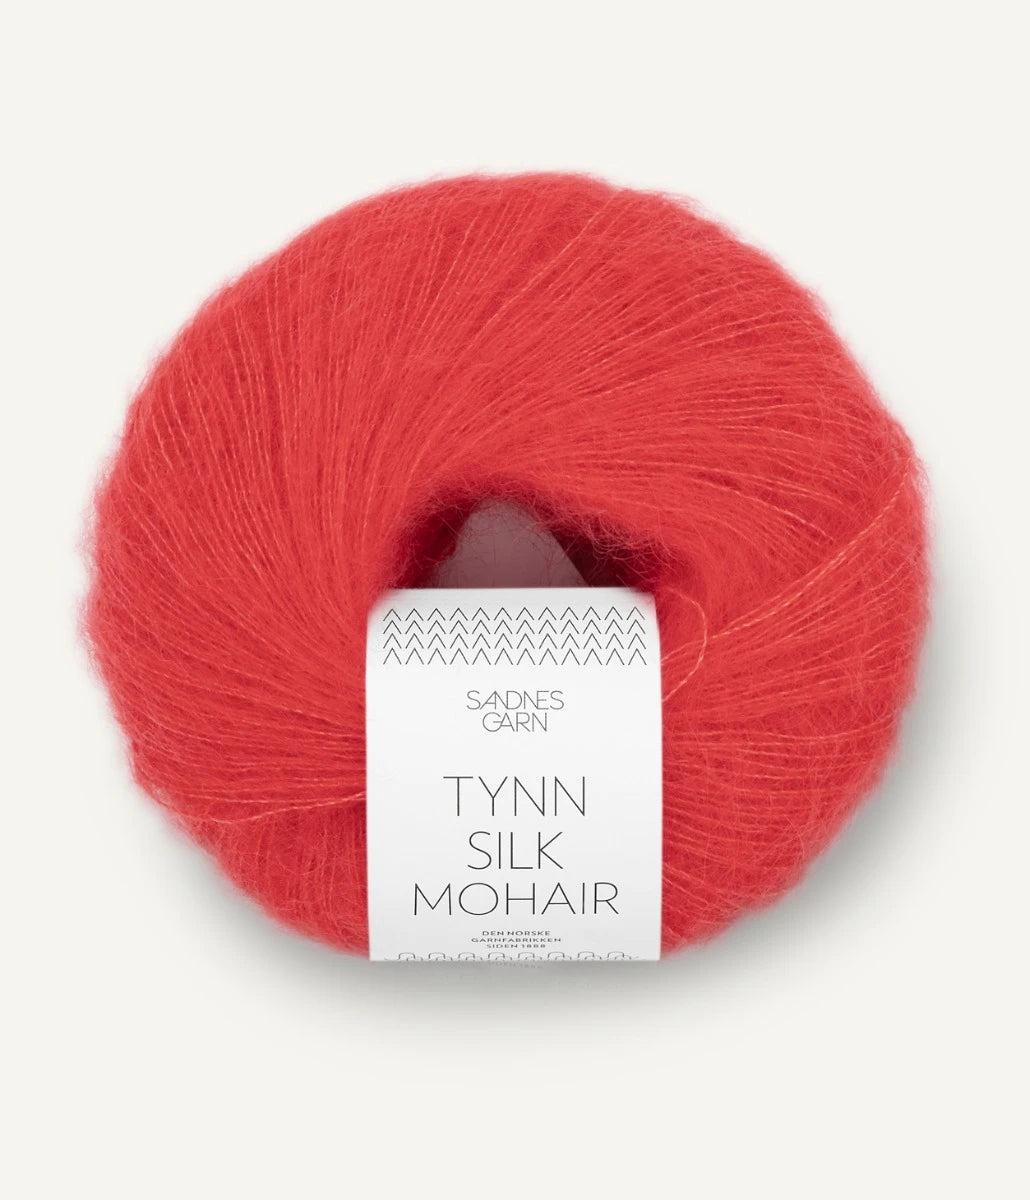 Kuvassa on Sandnes Garn Tynn Silk Mohair -lanka (yarn) värissä Poppy.